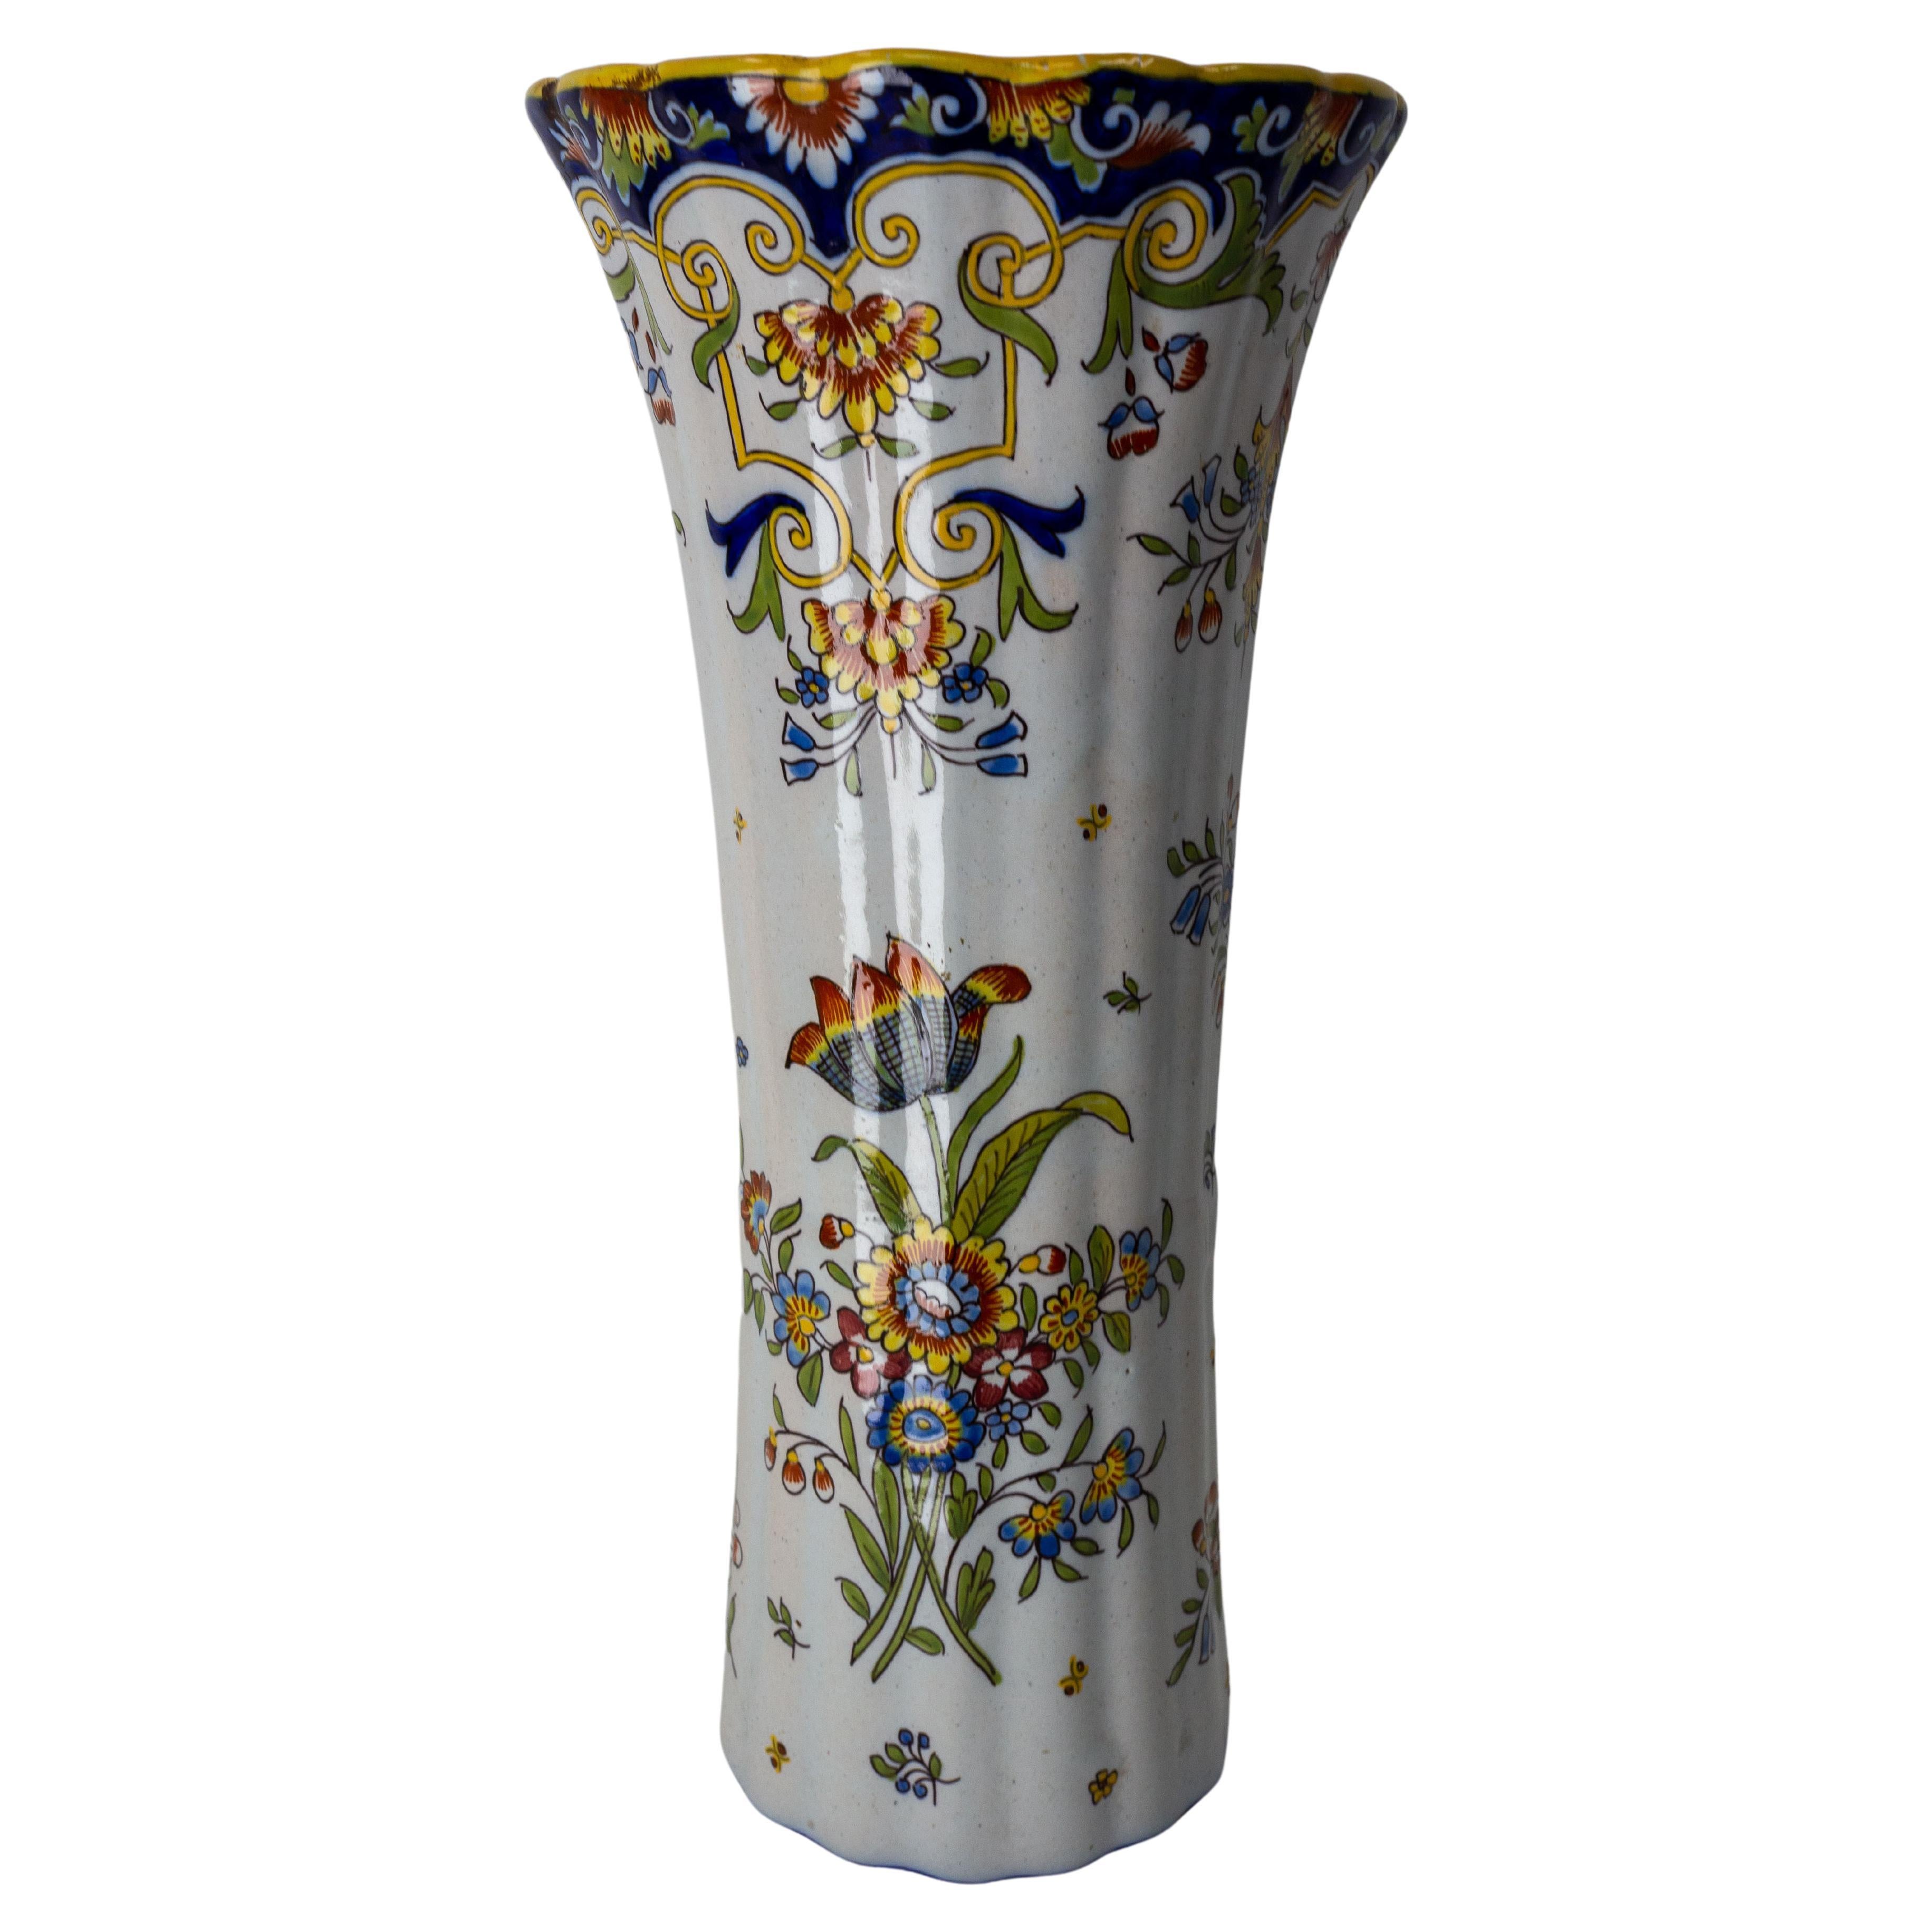 French Vieux Rouen Faience Vase with Vegetal Patterns Art Nouveau, c. 1900